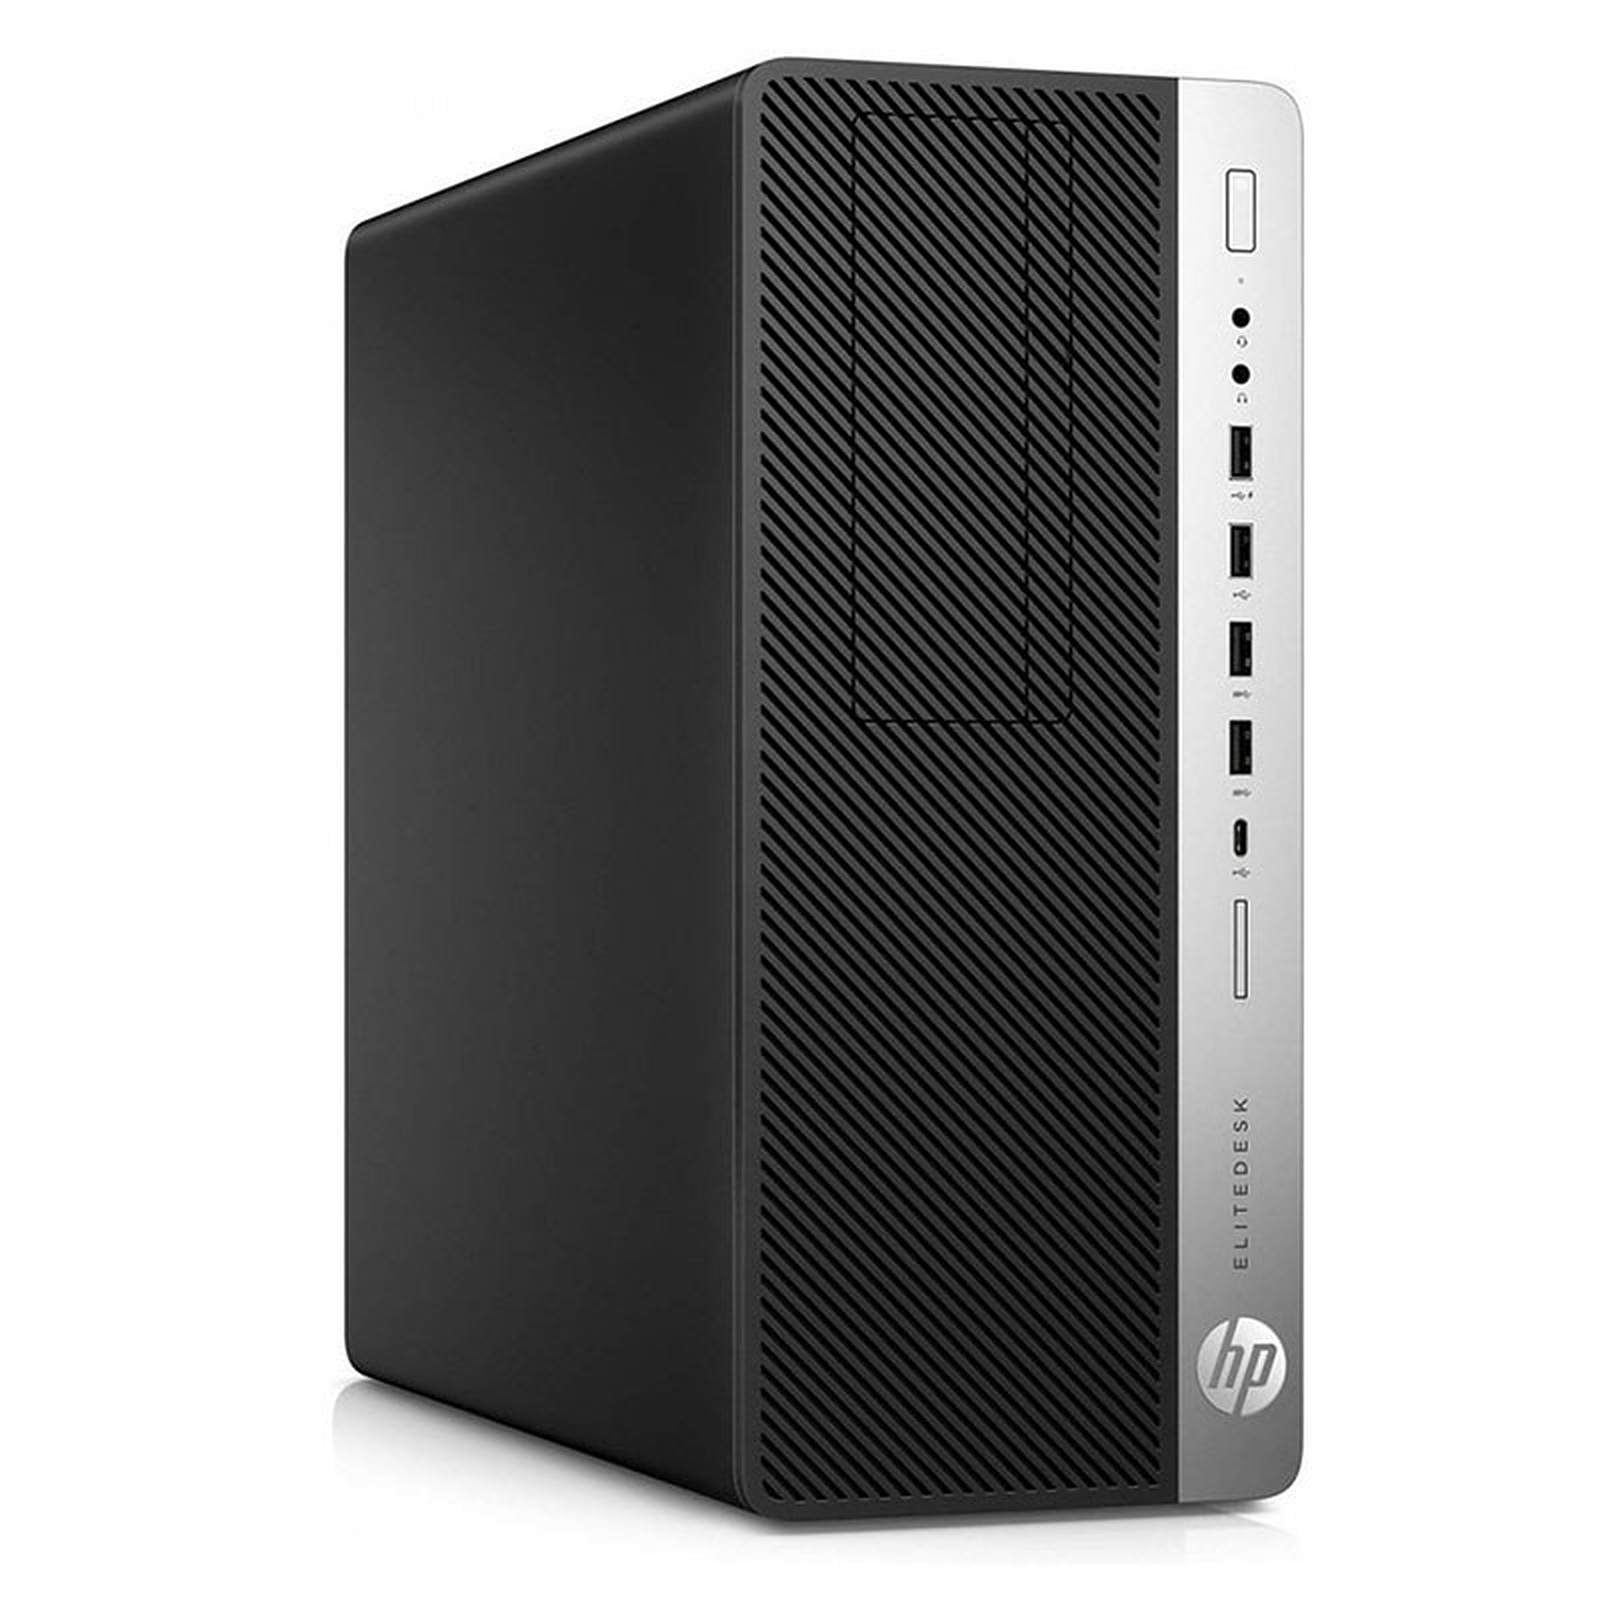 HP LPG-800G3 (I565824S) · Reconditionne - PC de bureau reconditionne HP